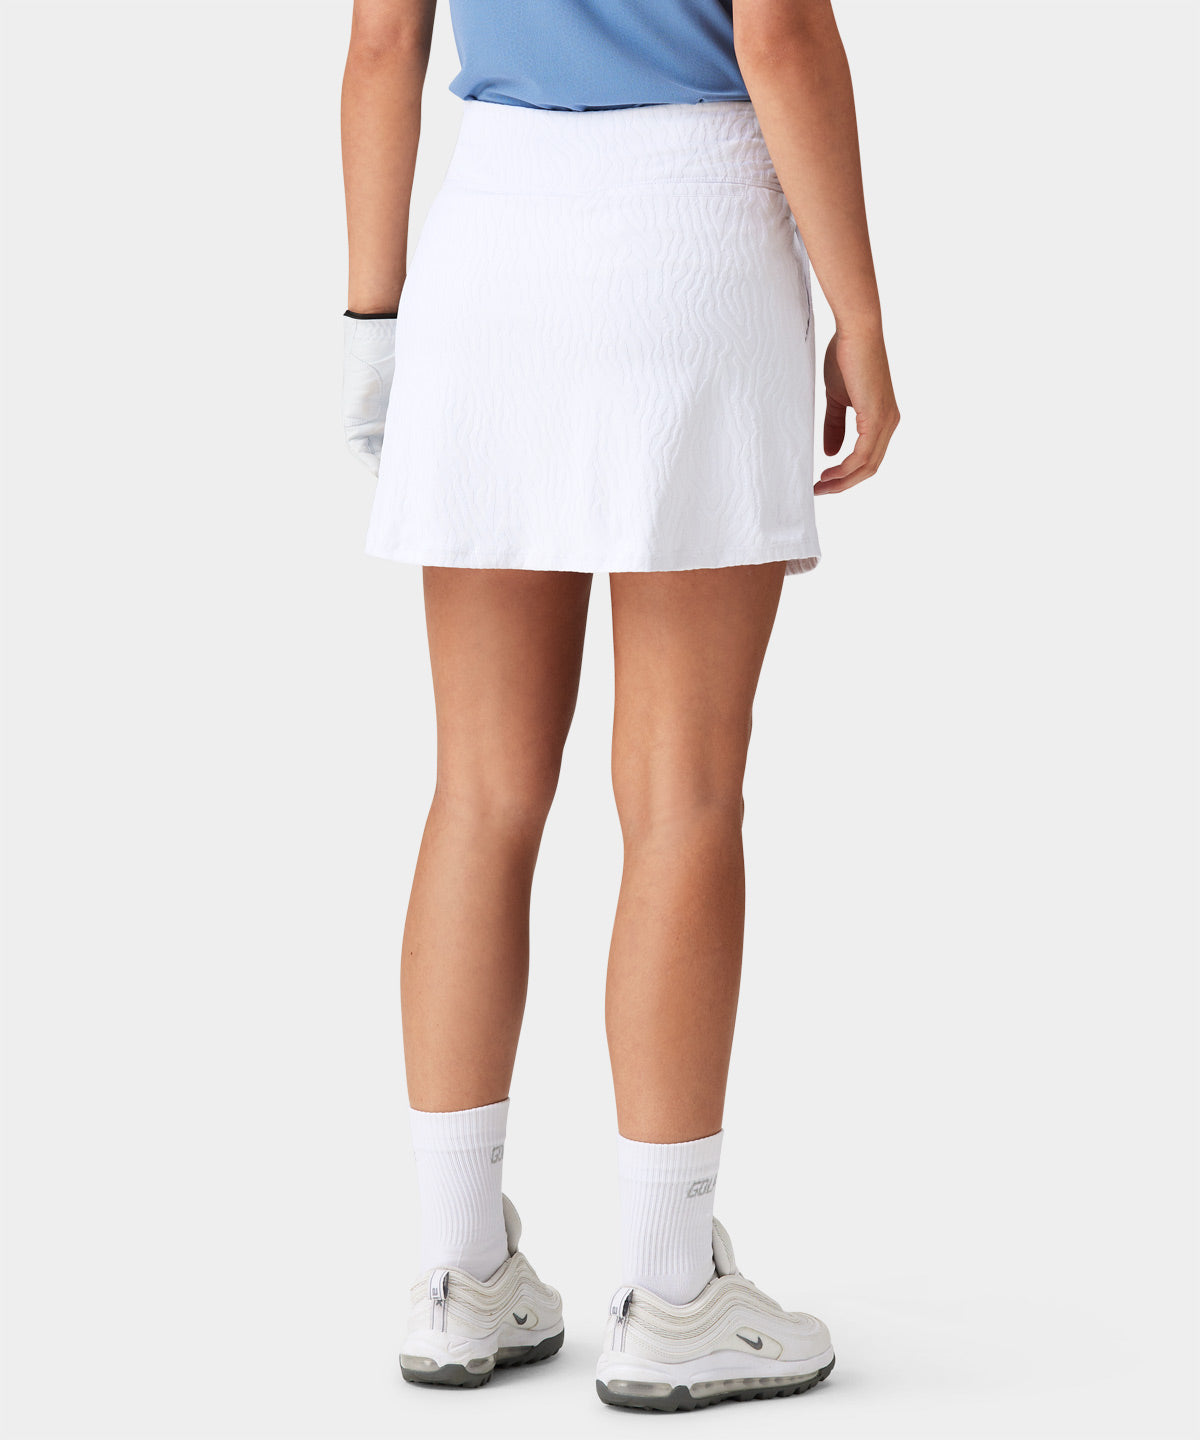 Rori White Performance Skirt Macade Golf